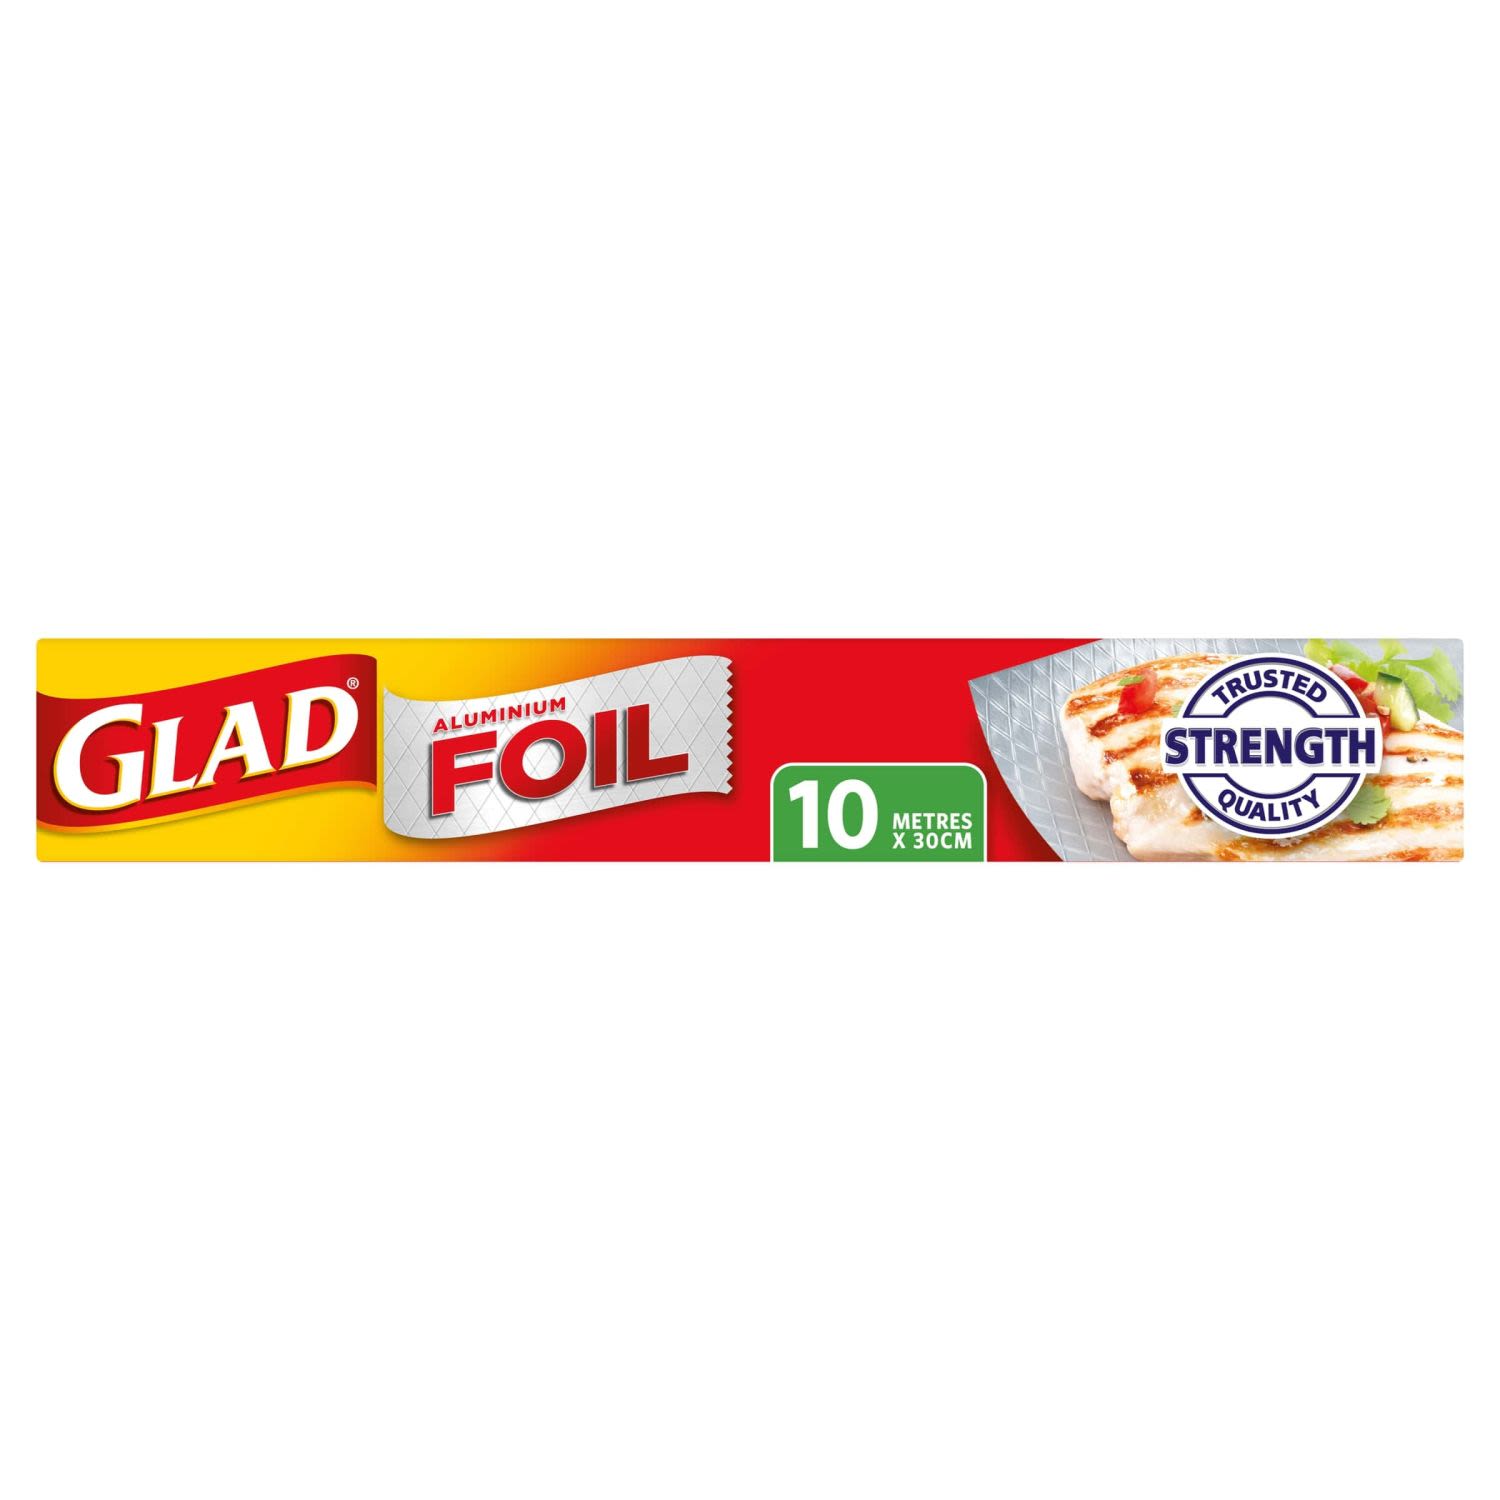 Glad Foil 10 metres x 30cm , 1 Each